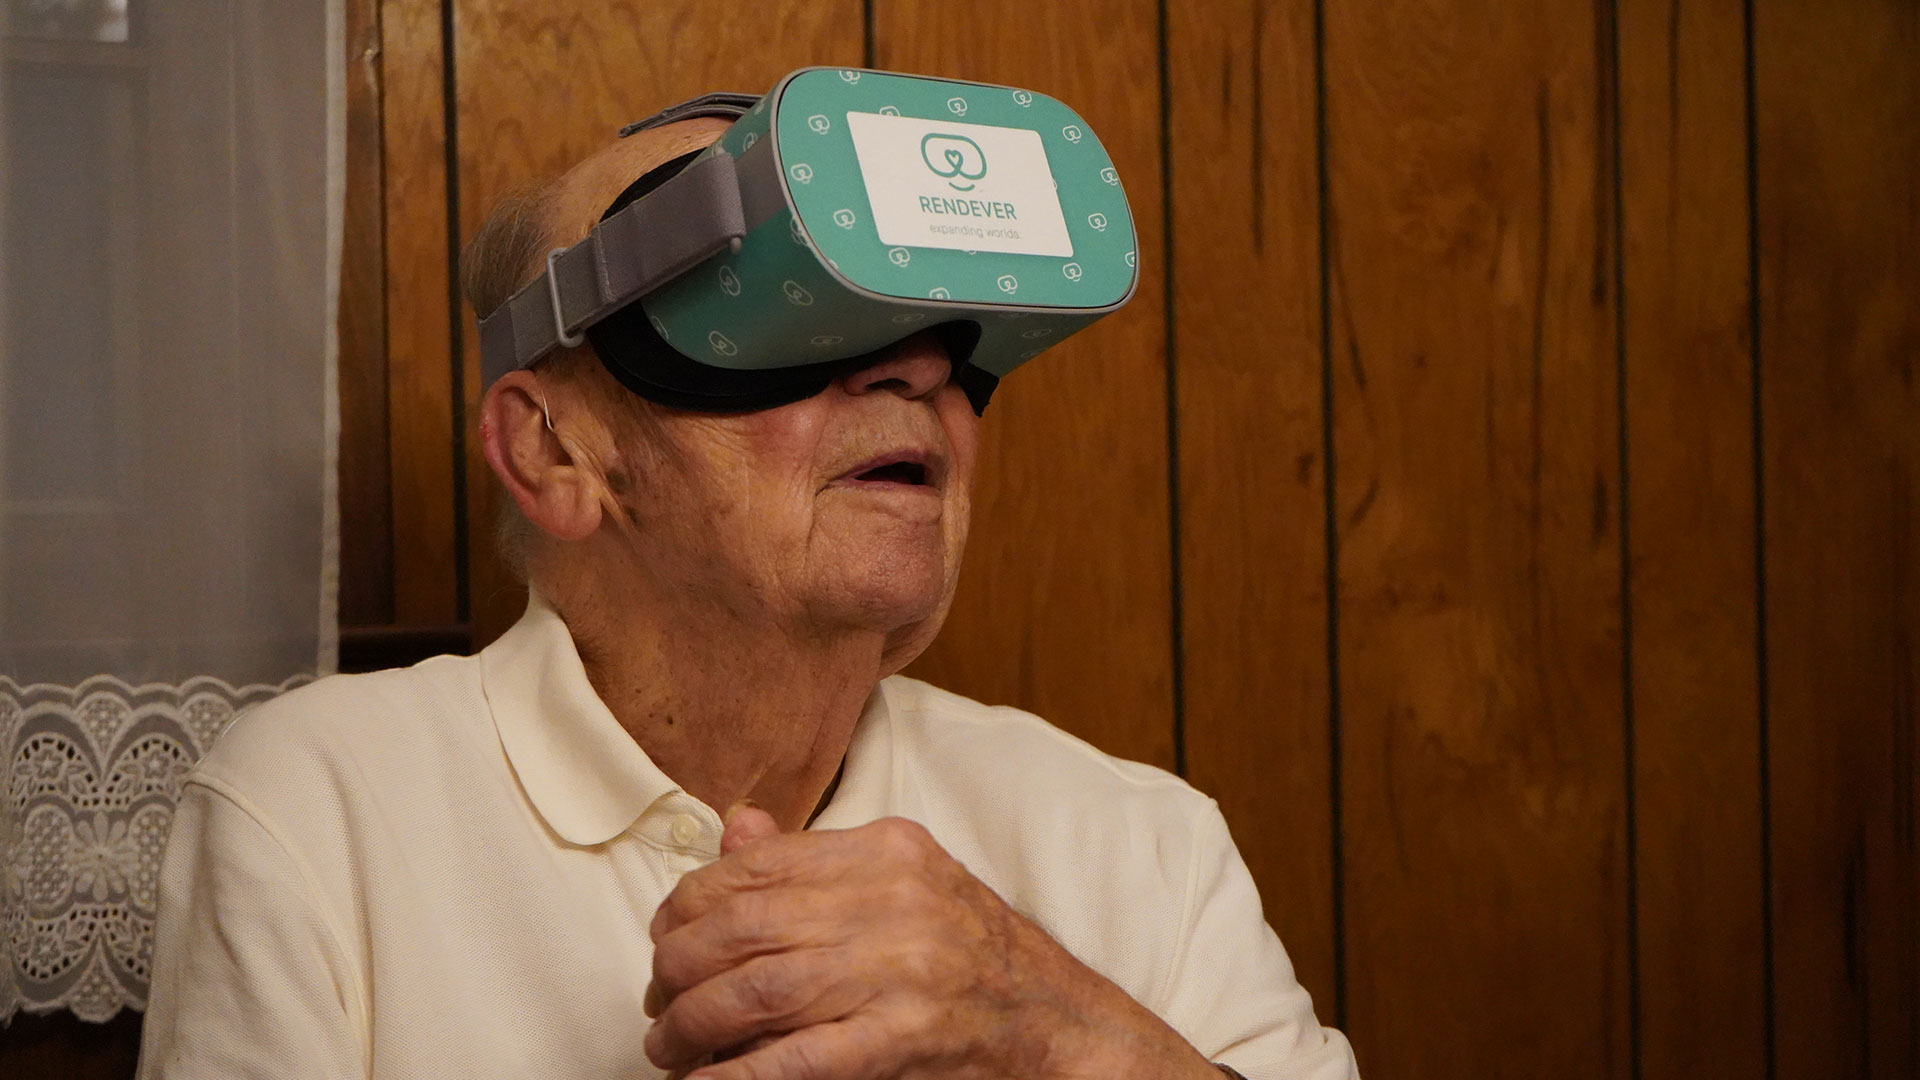 Rendever makes the lives of seniors better using VR